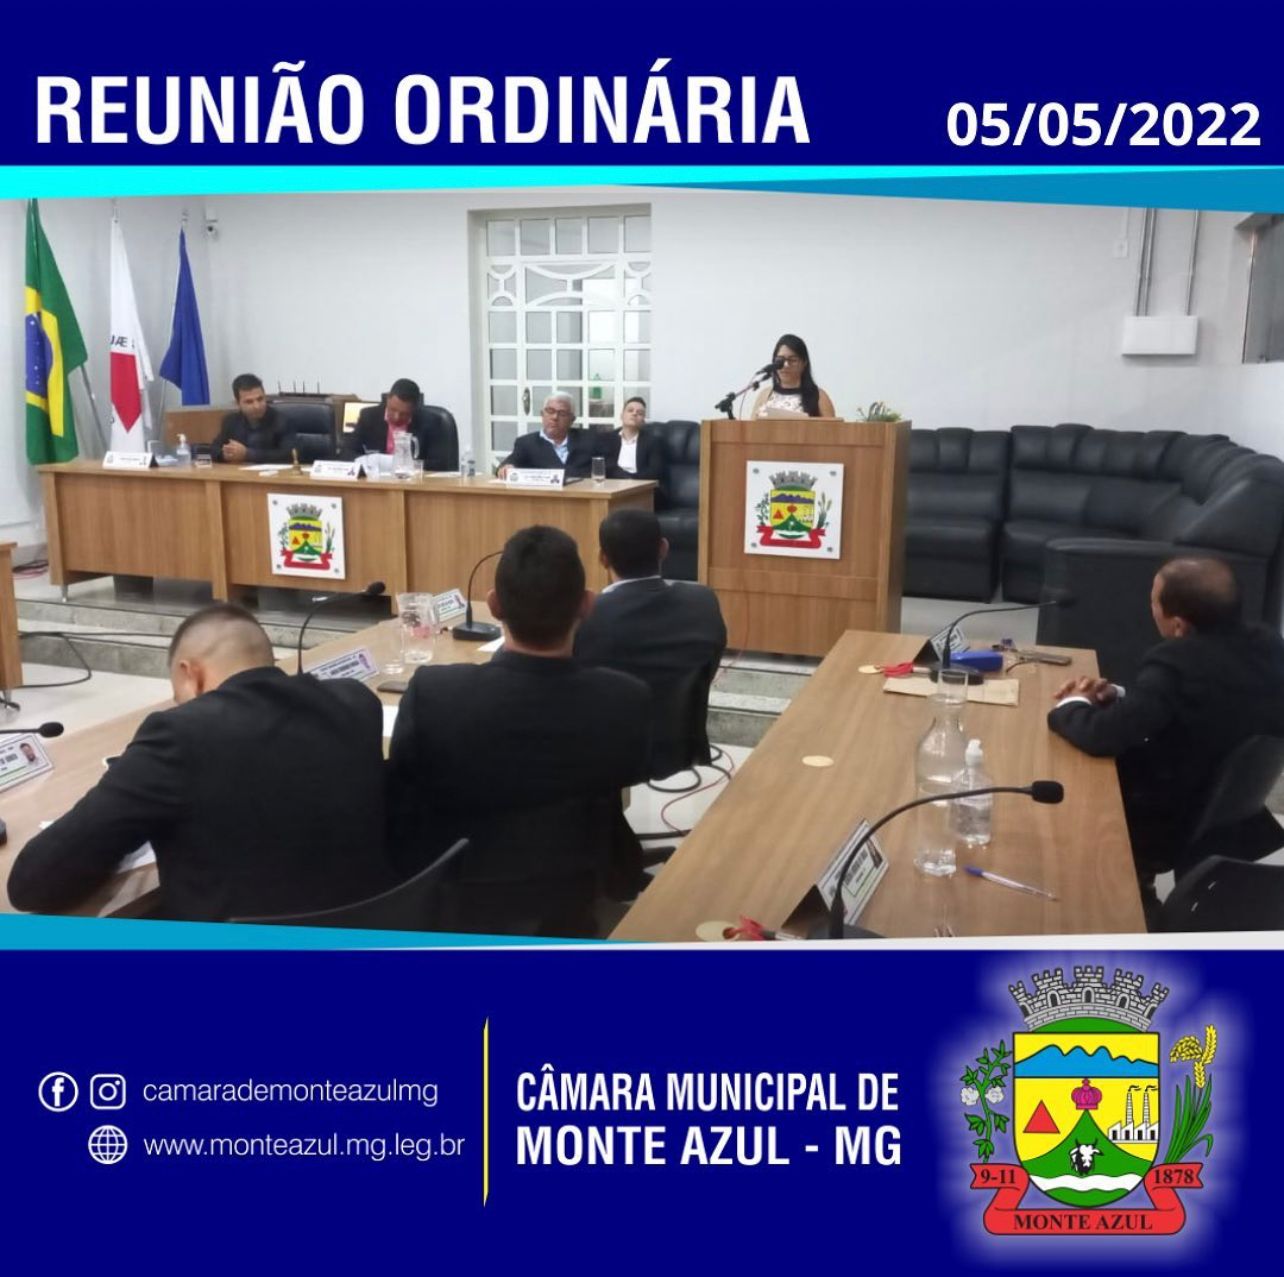 7ª REUNIÃO ORDINÁRIA - CÂMARA MUNICIPAL DE MONTE AZUL/MG 05/05/2022